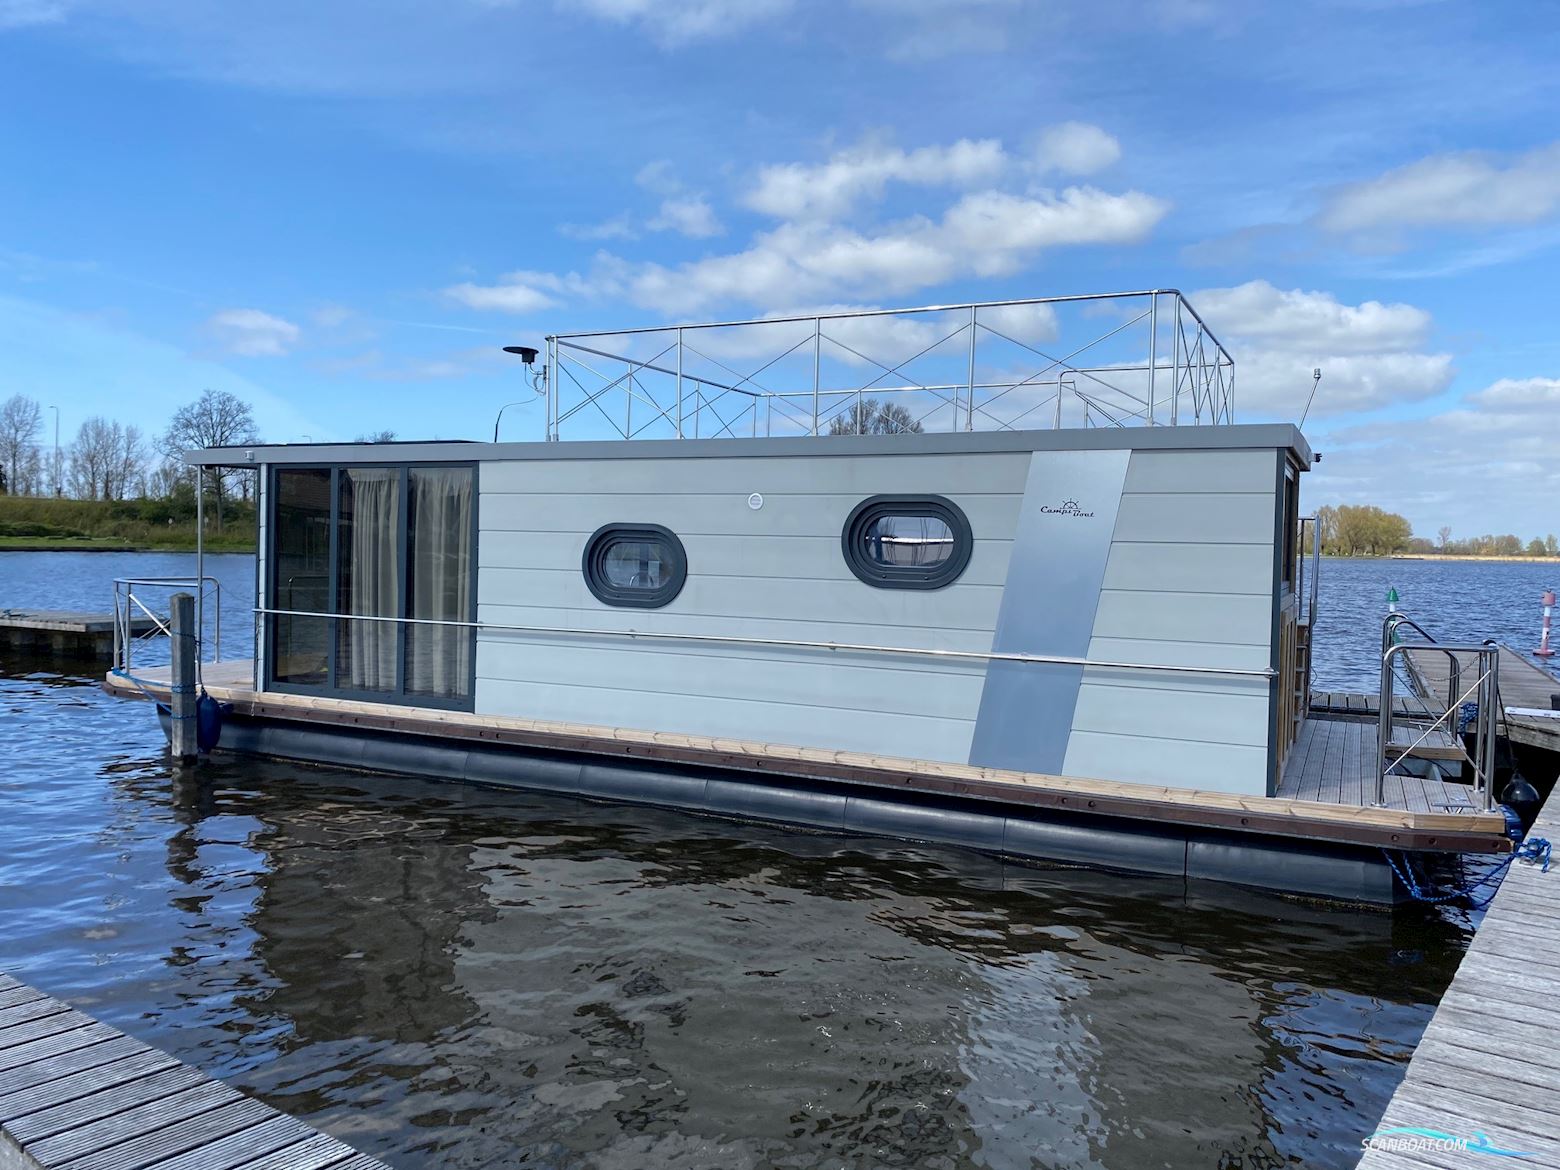 Campi 400 Houseboat Huizen aan water 2021, met Yamaha motor, The Netherlands